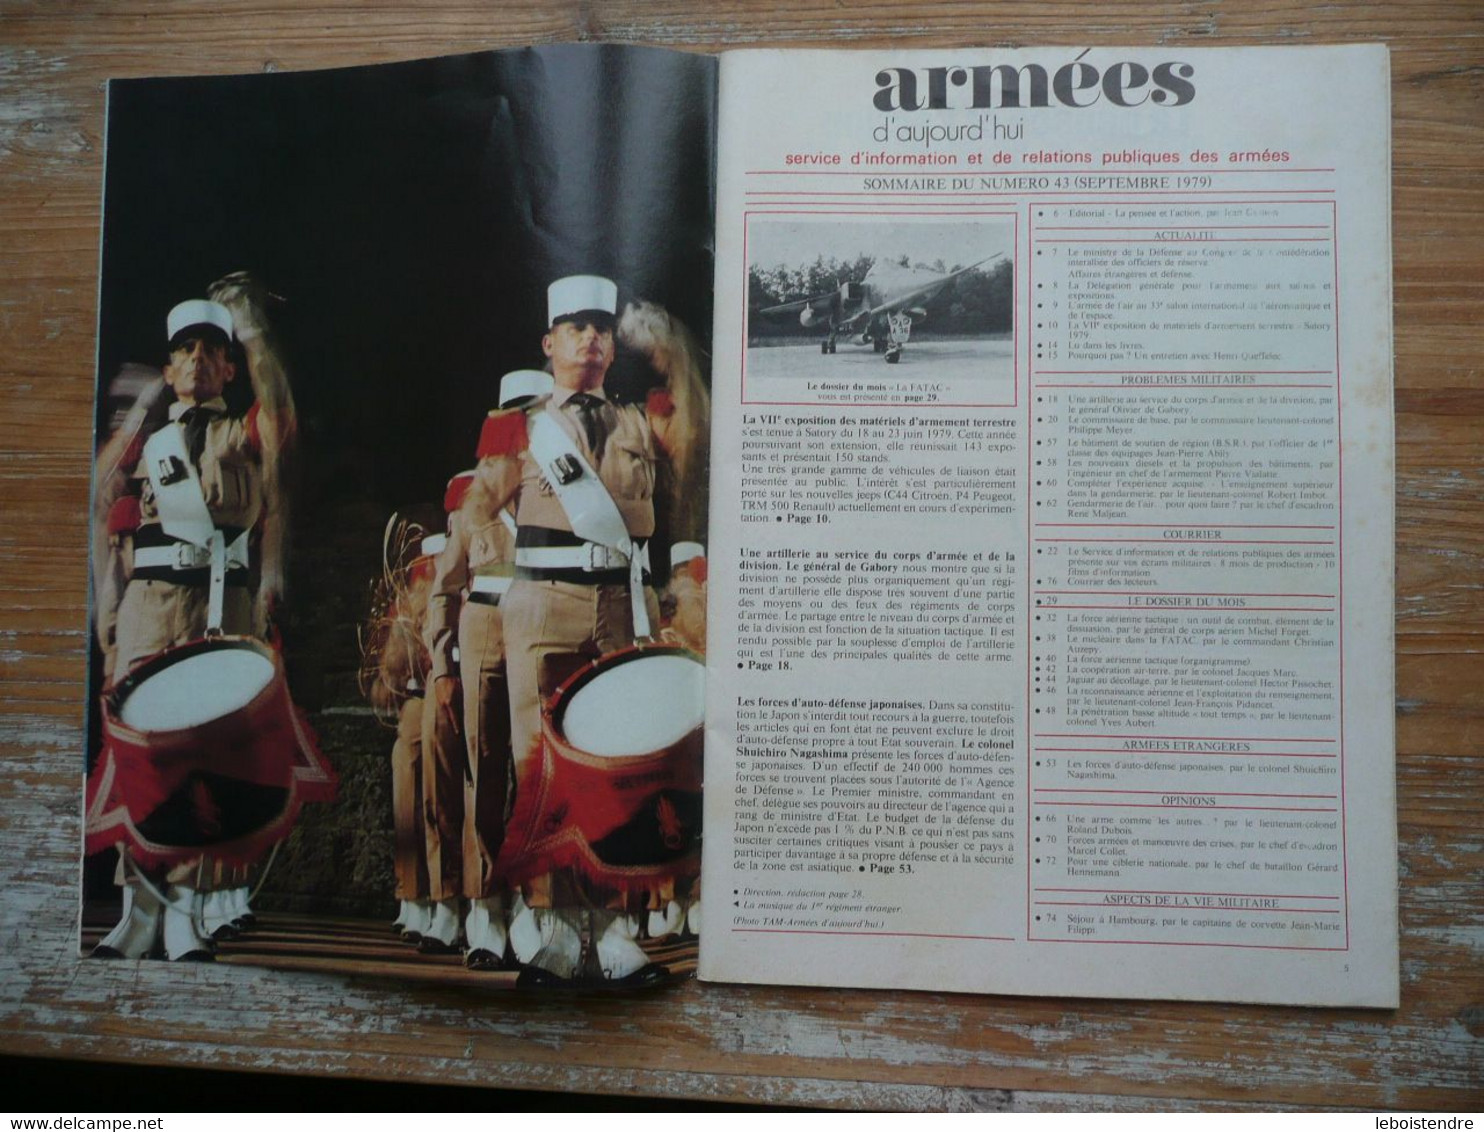 ARMEES D AUJOURD'HUI N° 43 SEPTEMBRE 1979 MENSUEL SATORY 1979 FORCES D AUTO-DEFENSE JAPONAISES FORCE AERIENNE TACTIQUE - French